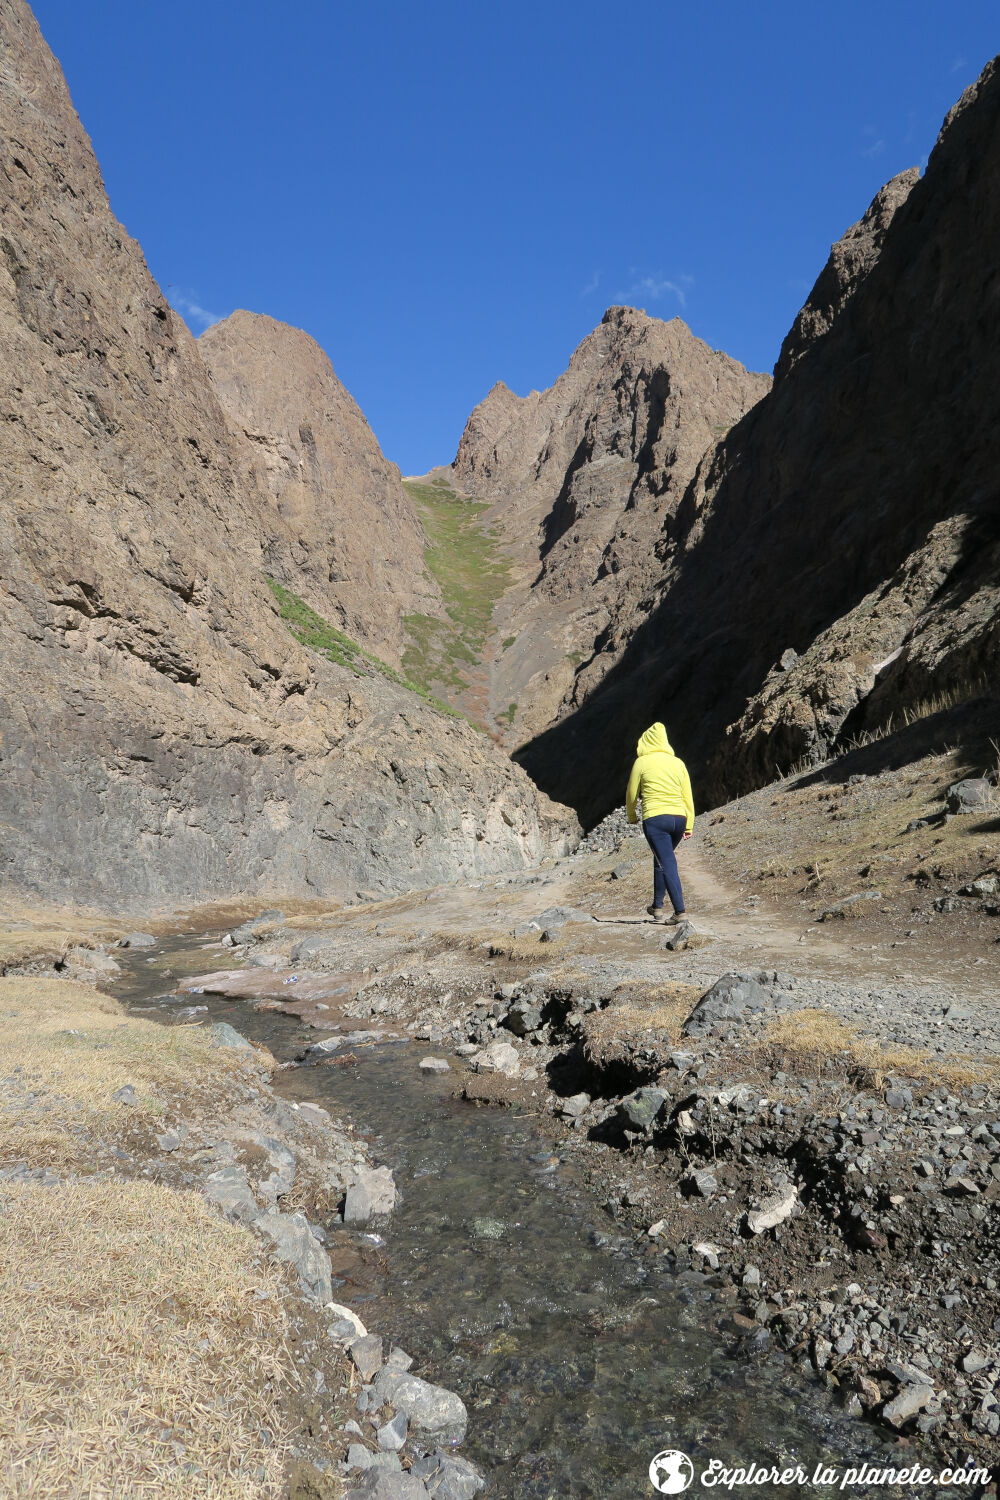 Le canyon de Yolyn Am dans le désert de Gobi avec une personne qui fait une randonnée.